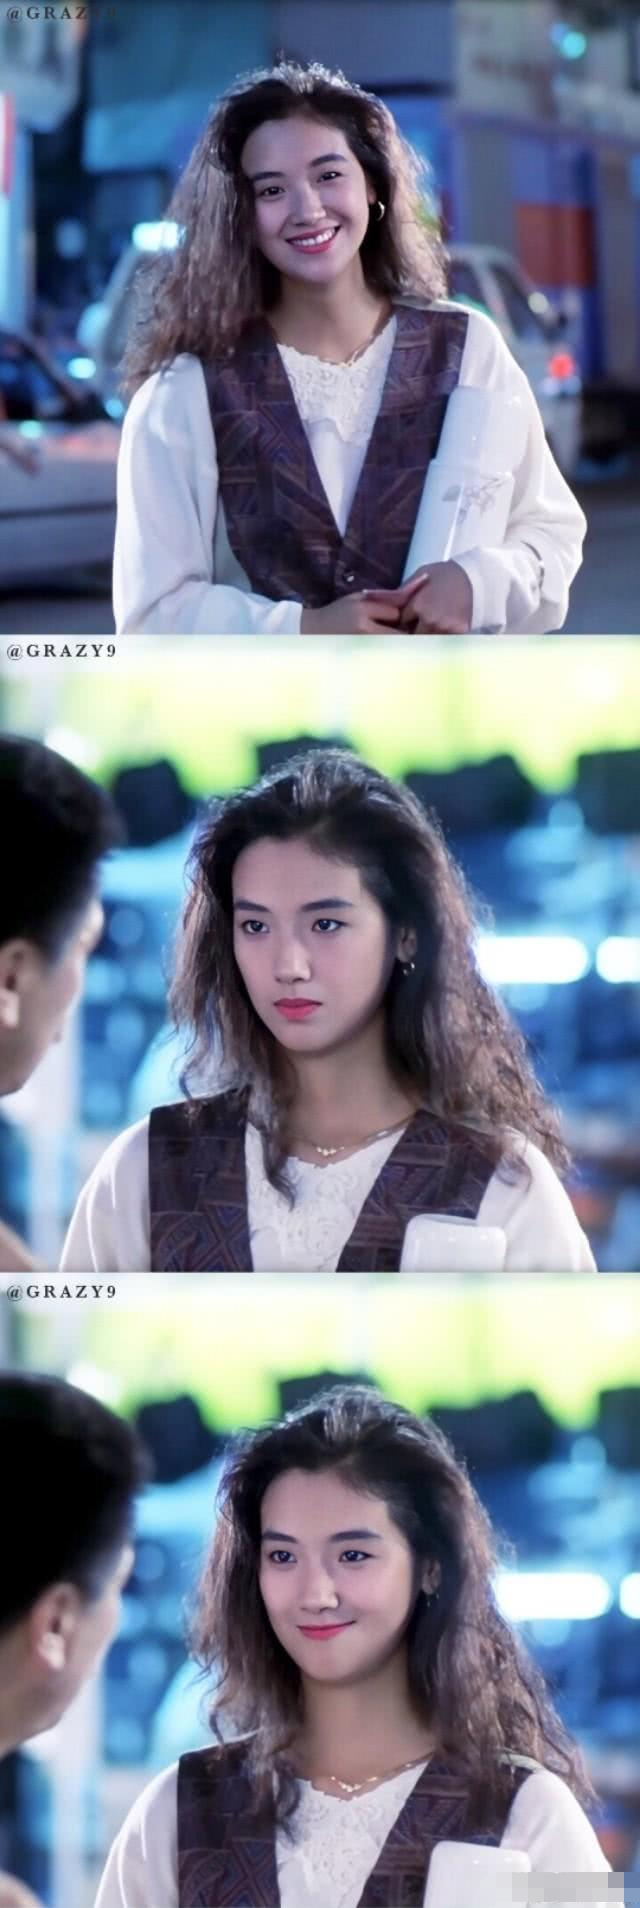 22岁的"吴倩莲"出演港片《天若有情》,喜欢她身上的淡淡气质